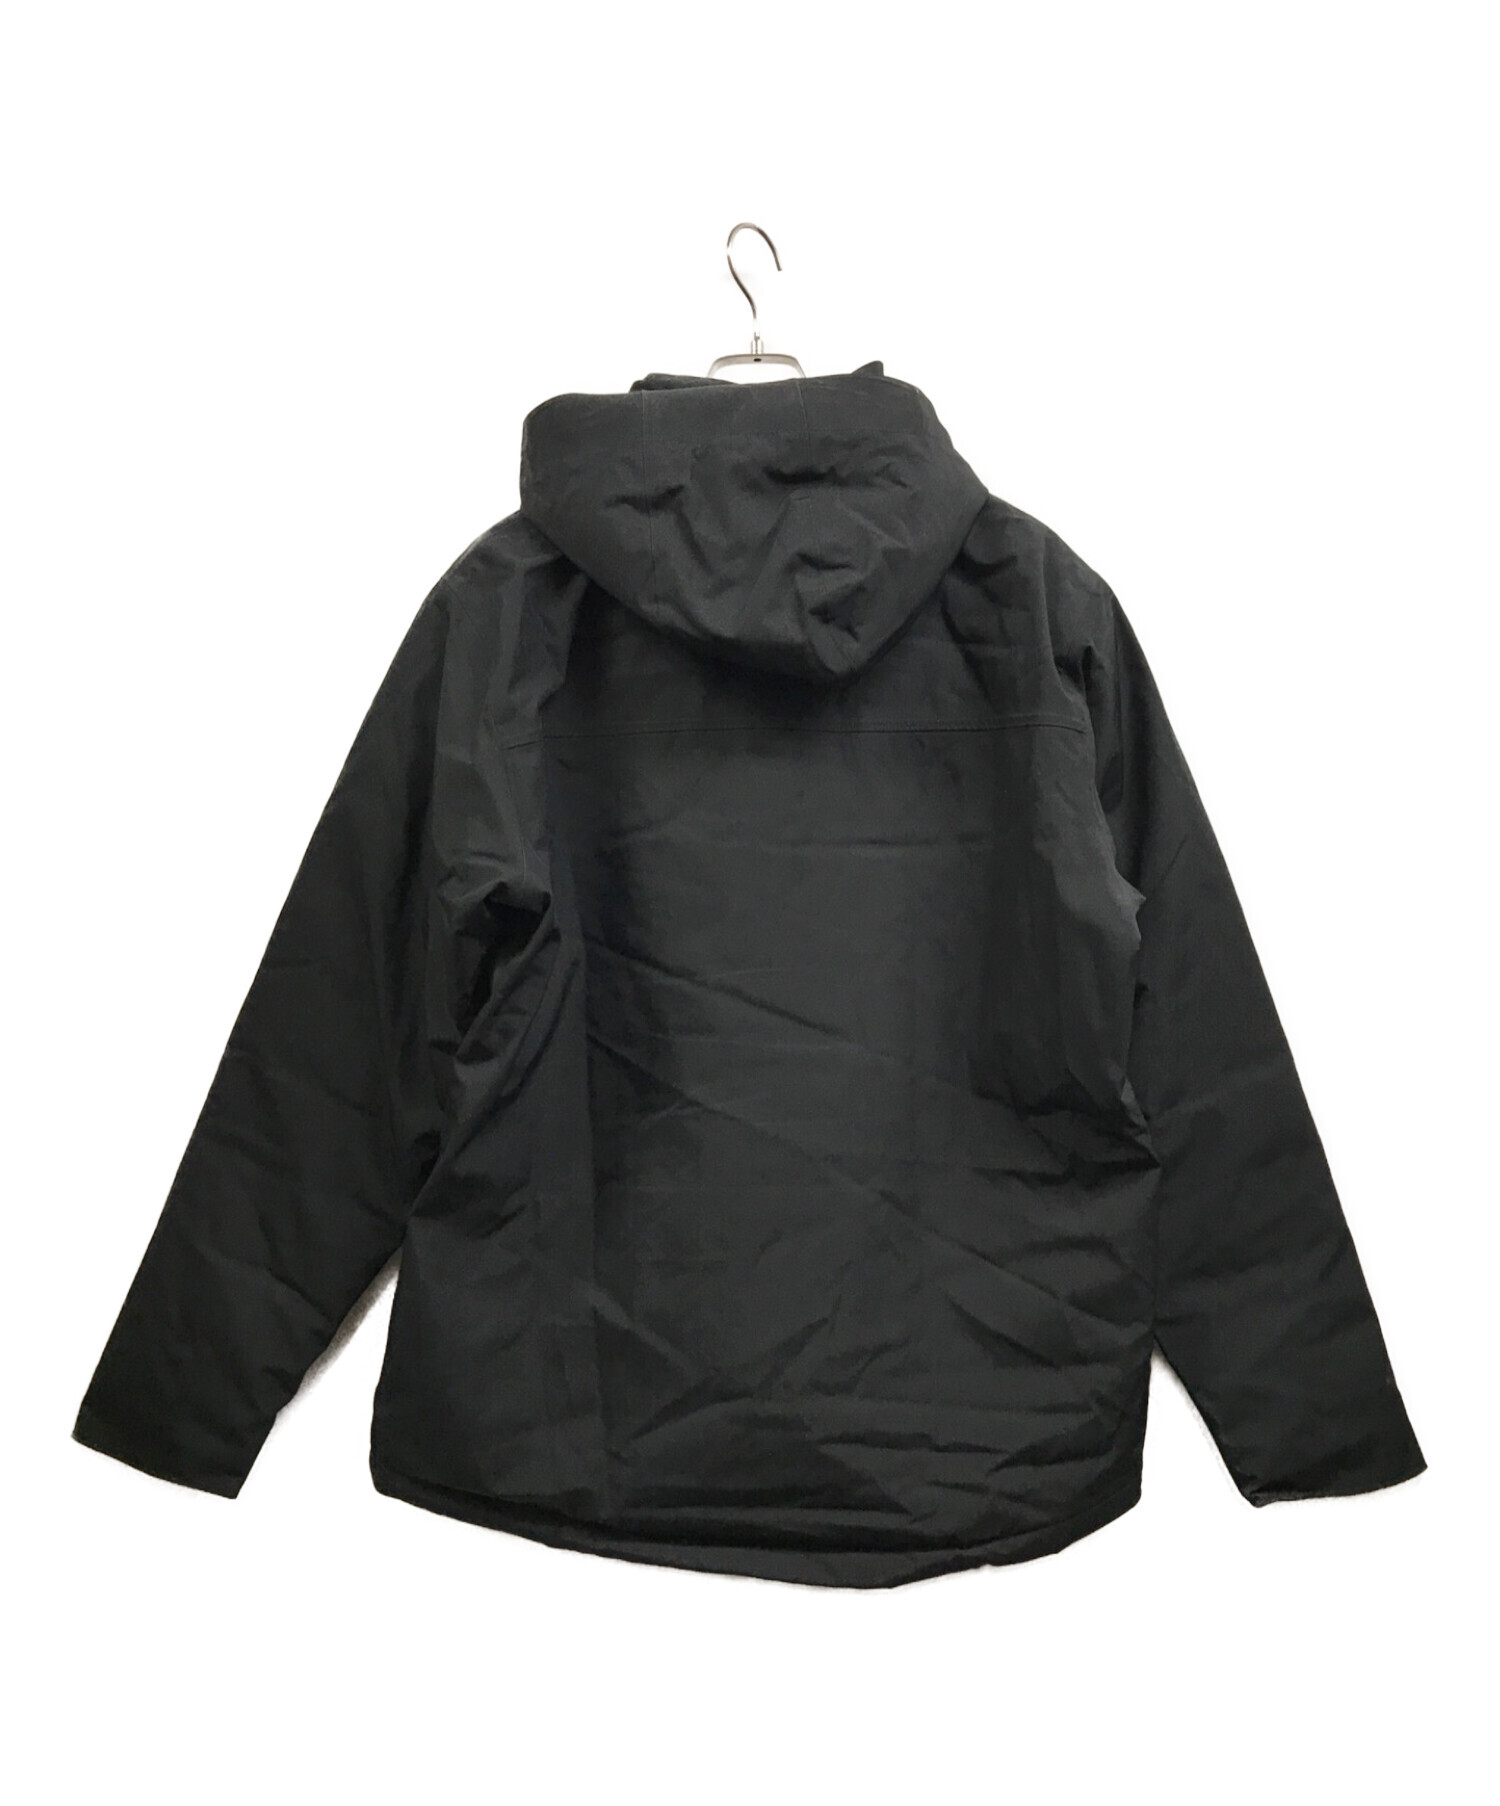 Patagonia (パタゴニア) トップリージャケット ブラック サイズ:L